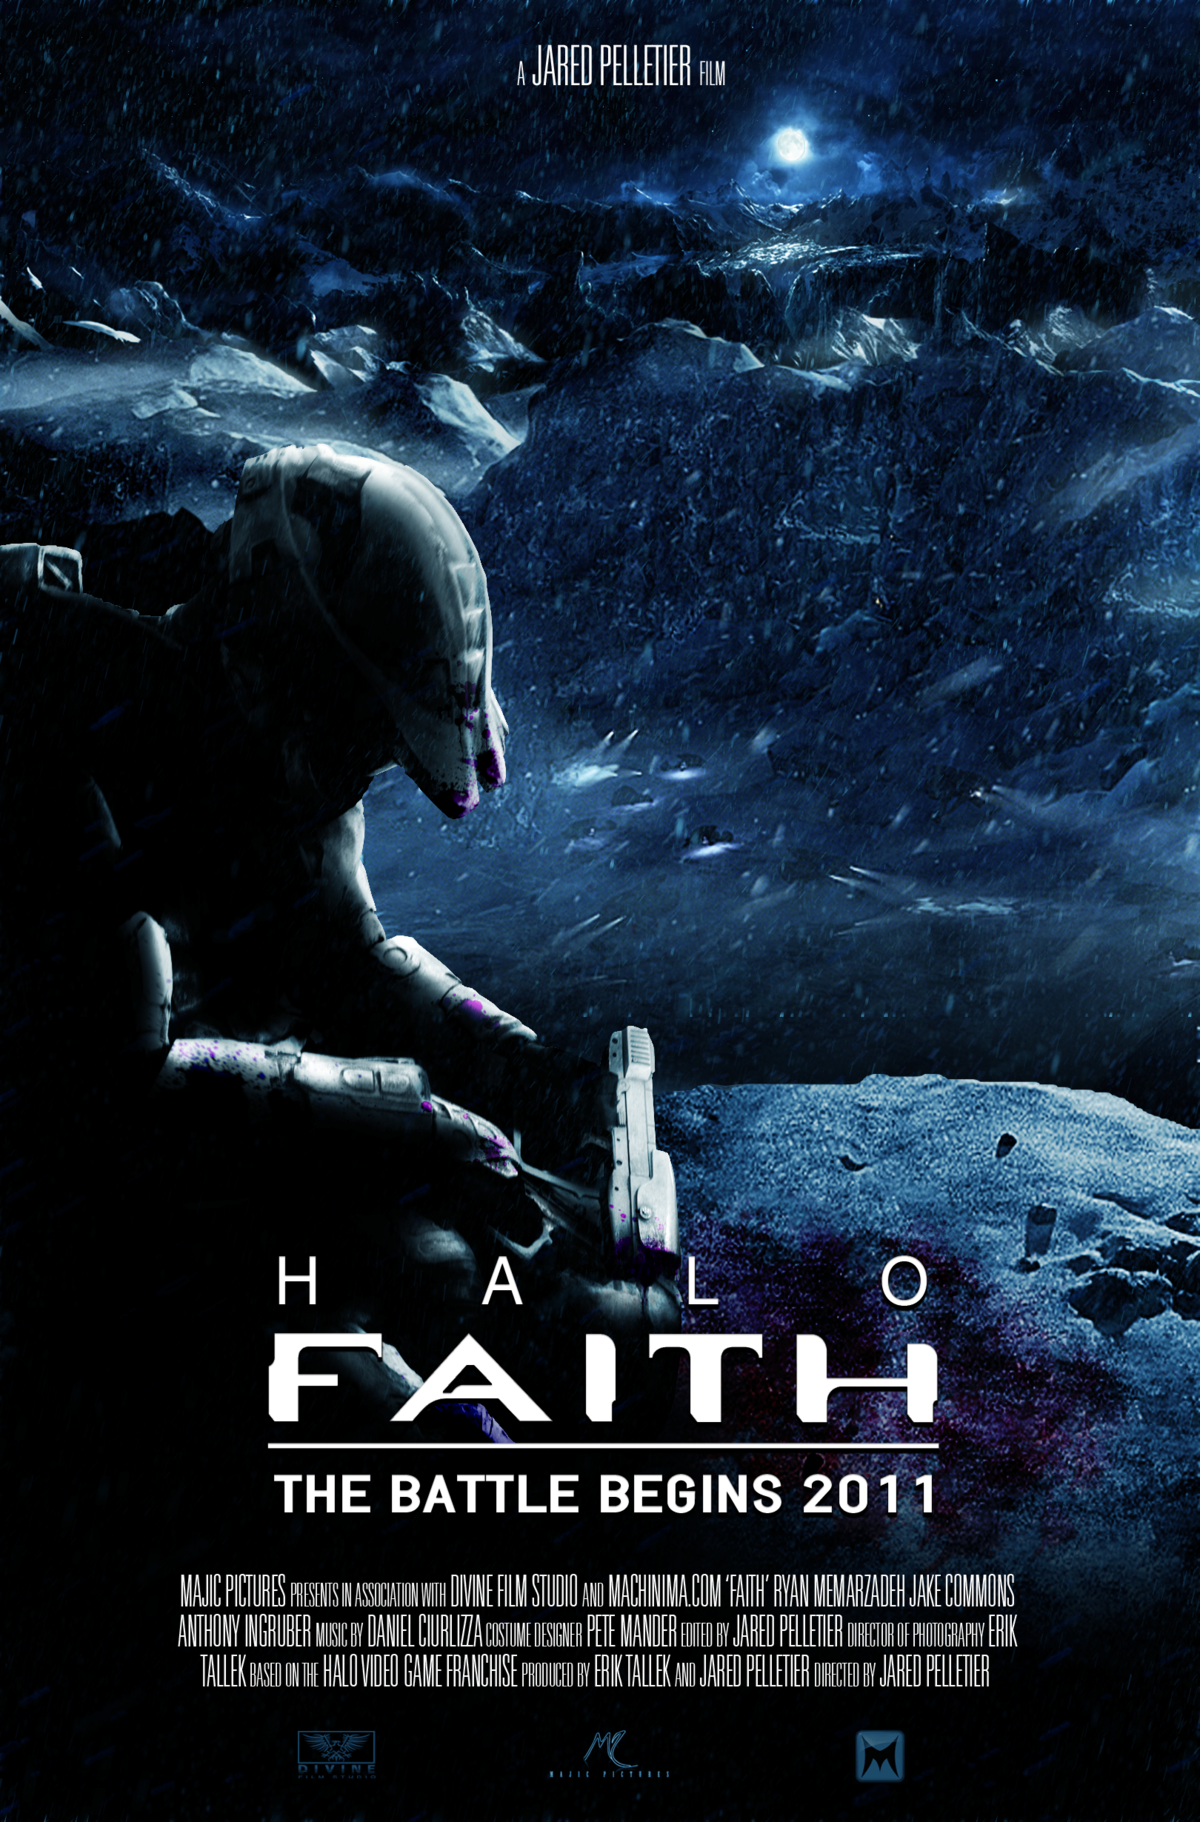 Faith+Covenant Films